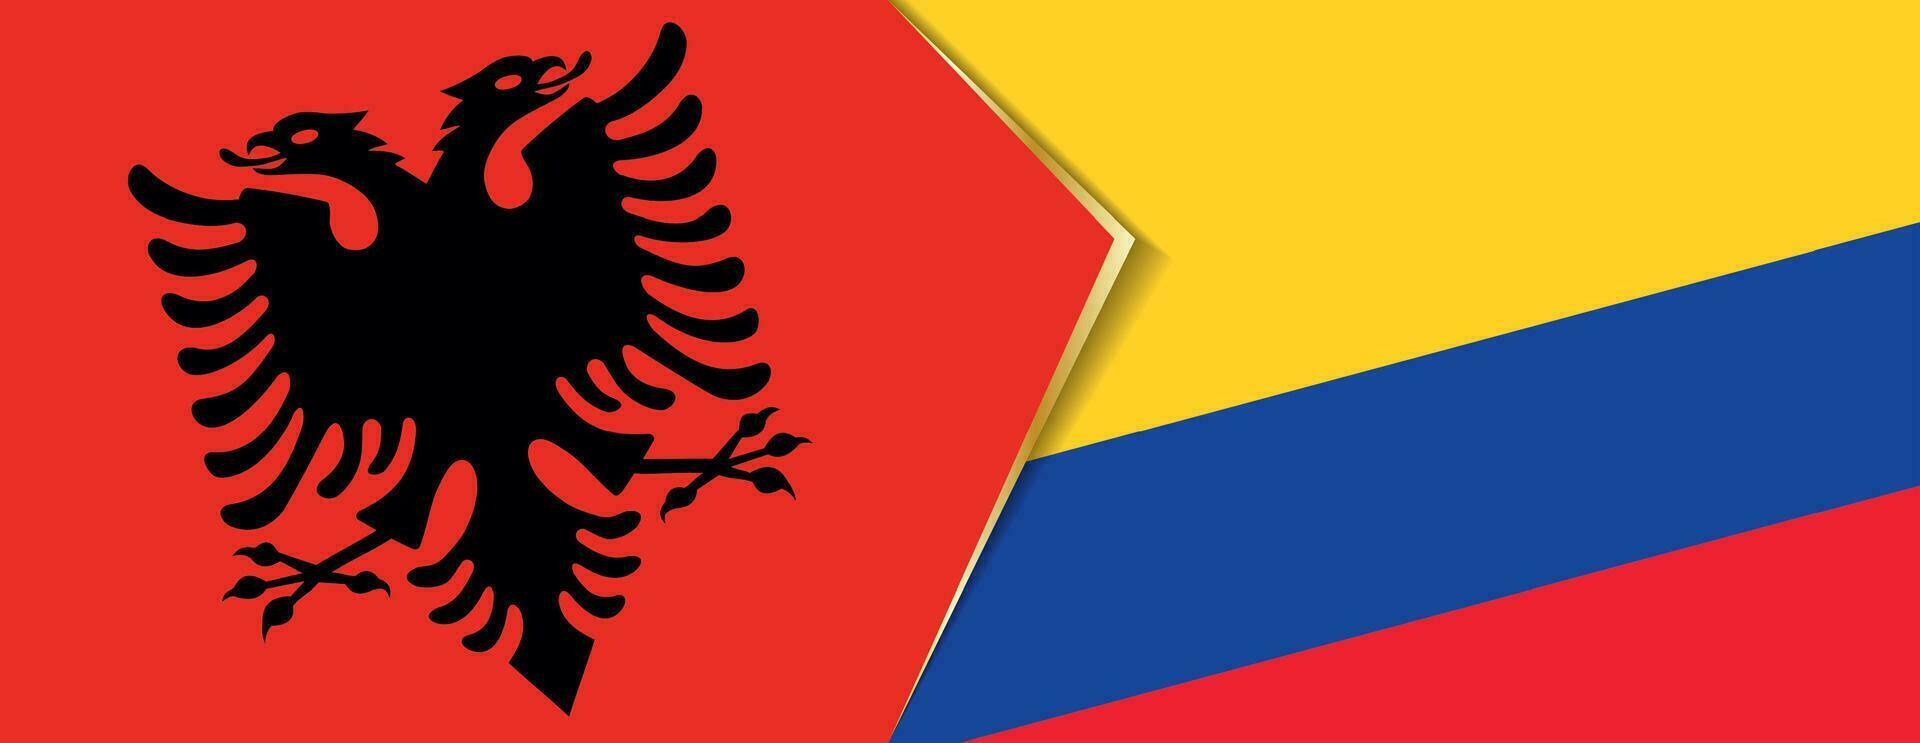 Albania e Colombia bandiere, Due vettore bandiere.